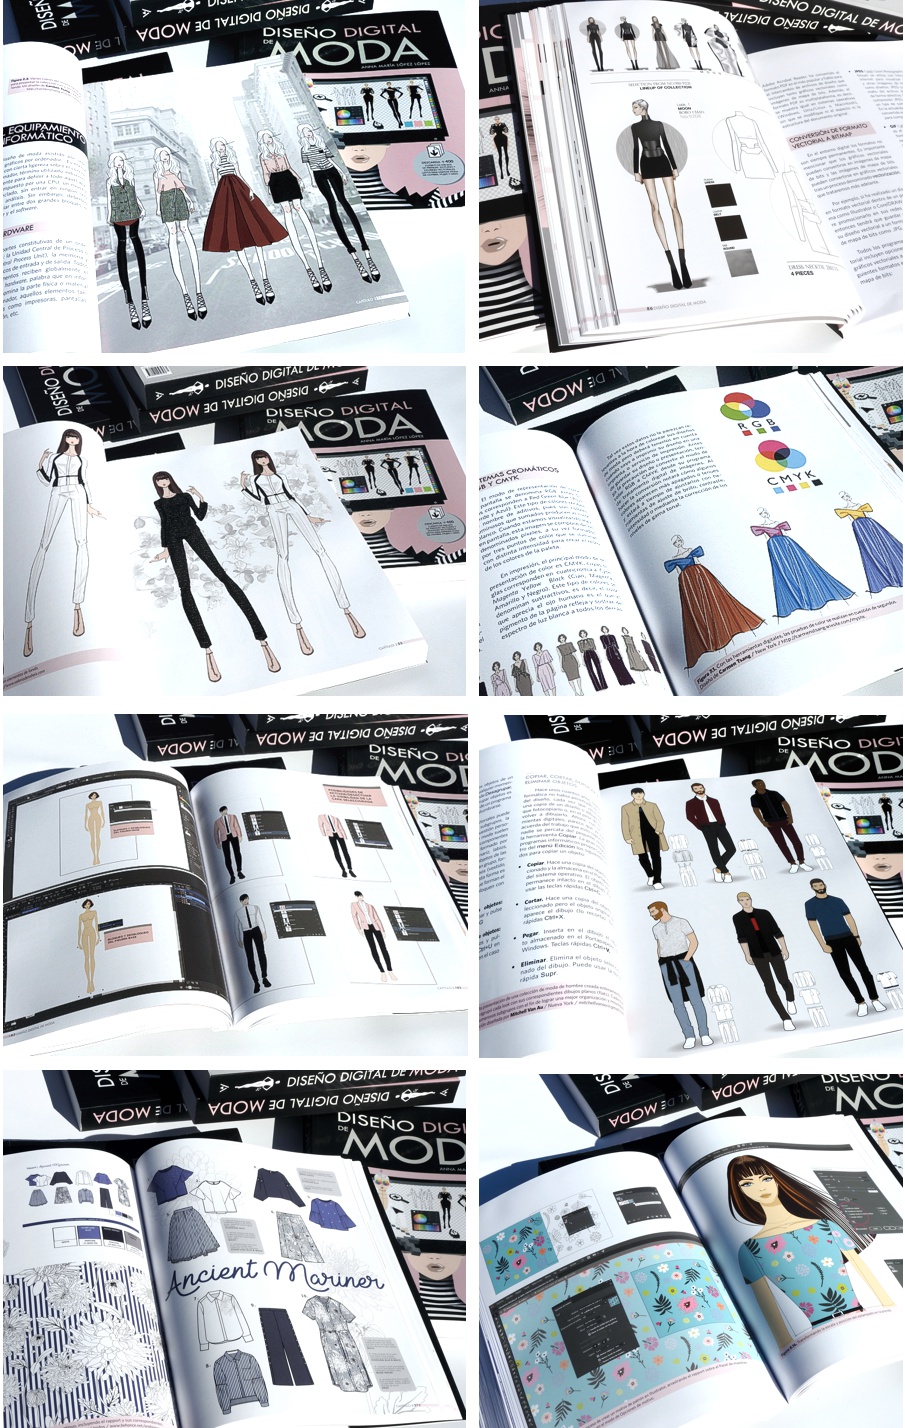 Ejemplo páginas interiores libro Diseño Digital de Moda